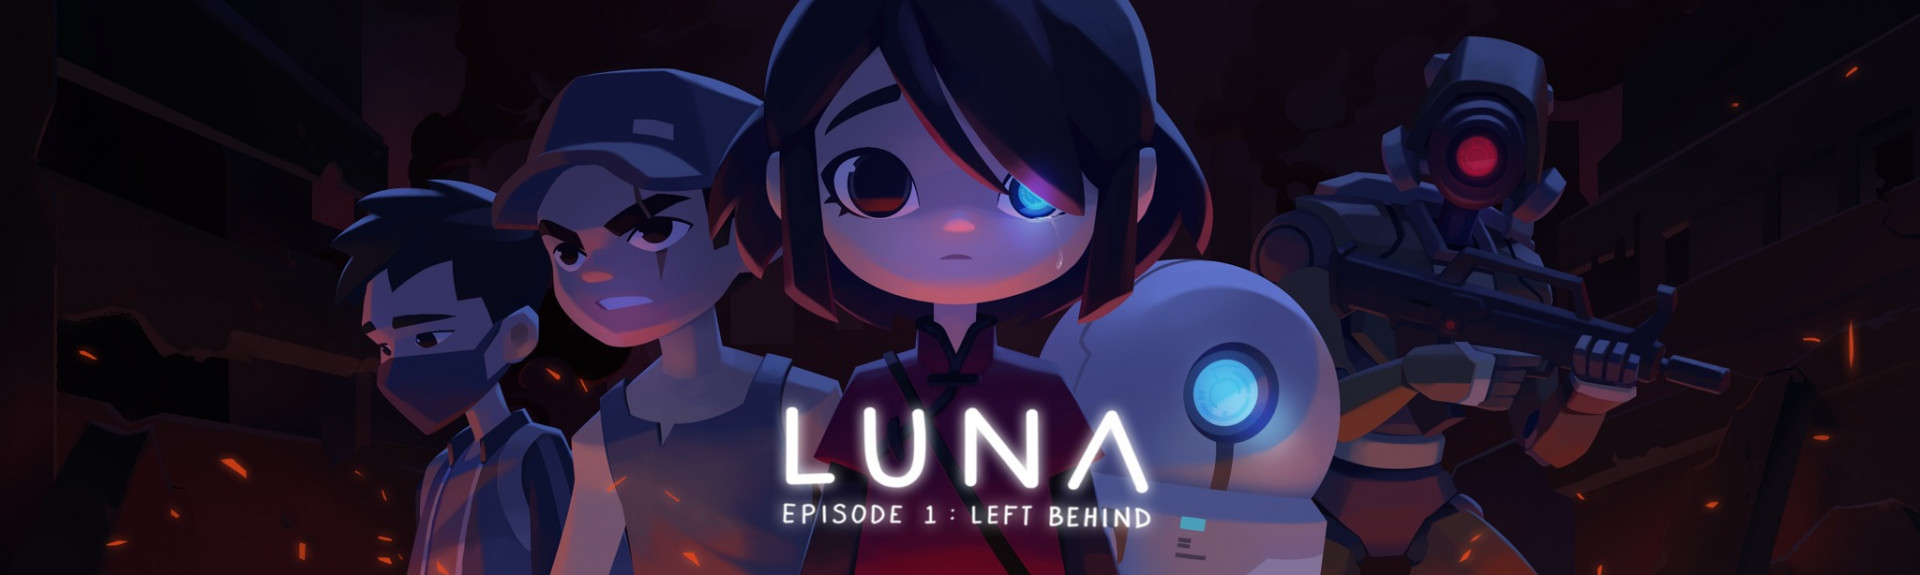 Luna: Episode 1 - Left Behind (DEMO)